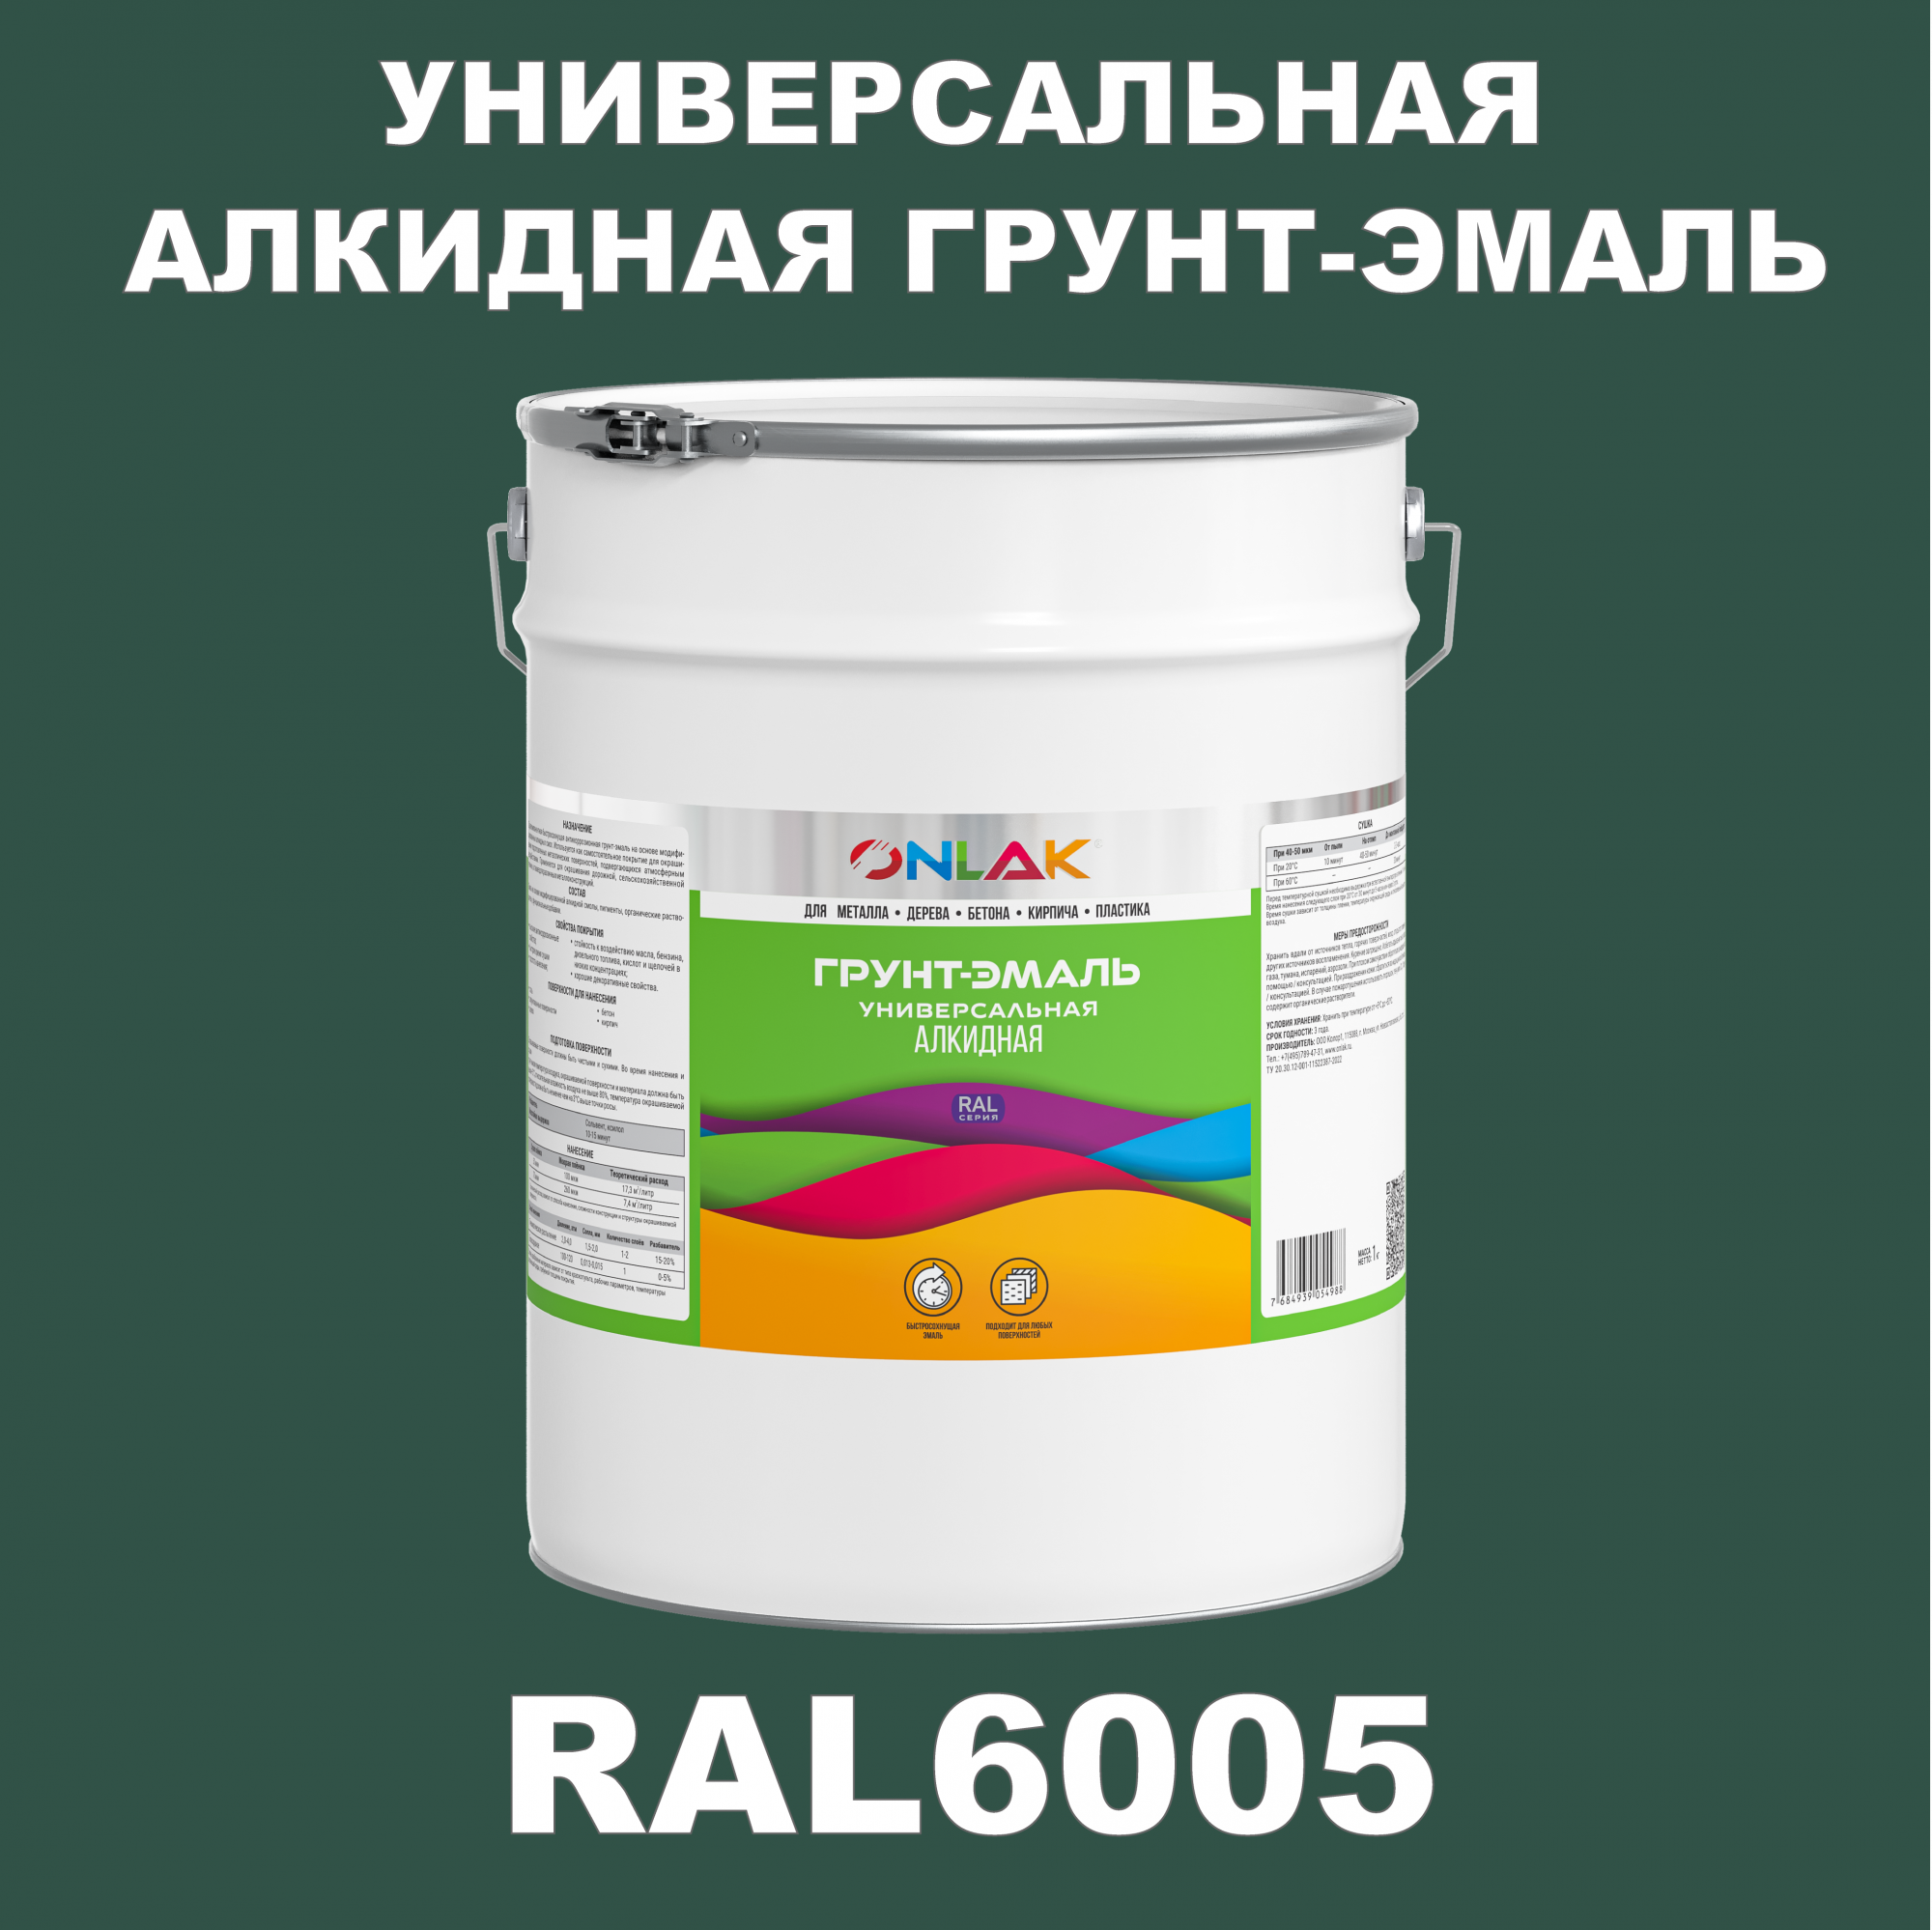 Грунт-эмаль ONLAK 1К RAL6005 антикоррозионная алкидная по металлу по ржавчине 20 кг грунт эмаль престиж по ржавчине алкидная зеленая 1 9 кг